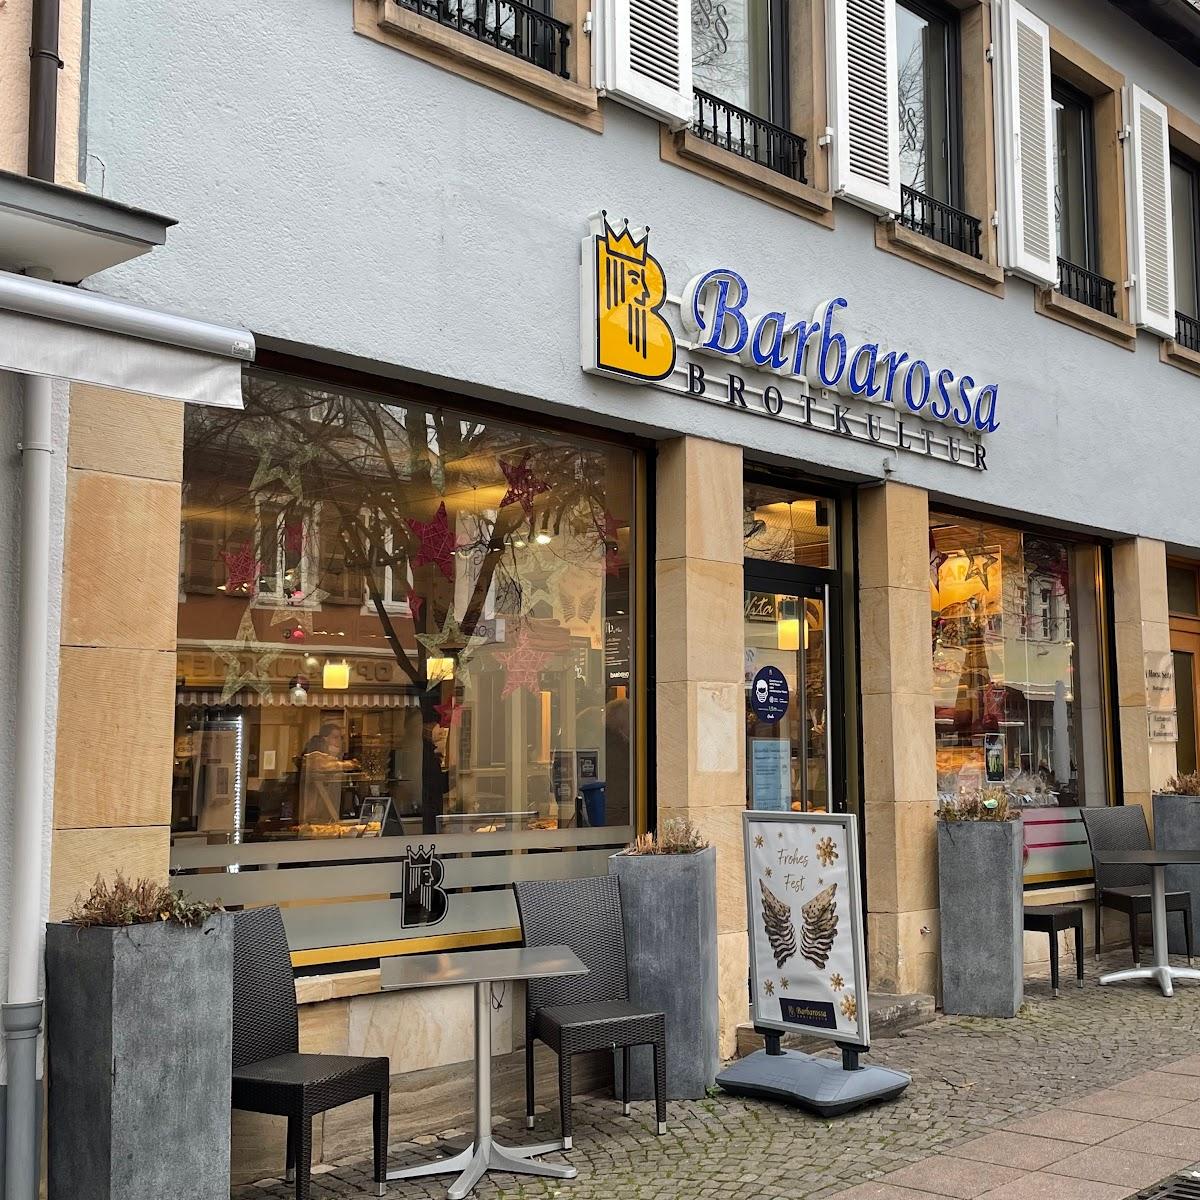 Restaurant "Barbarossa Bäckerei GmbH & Co. KG" in Bad Dürkheim